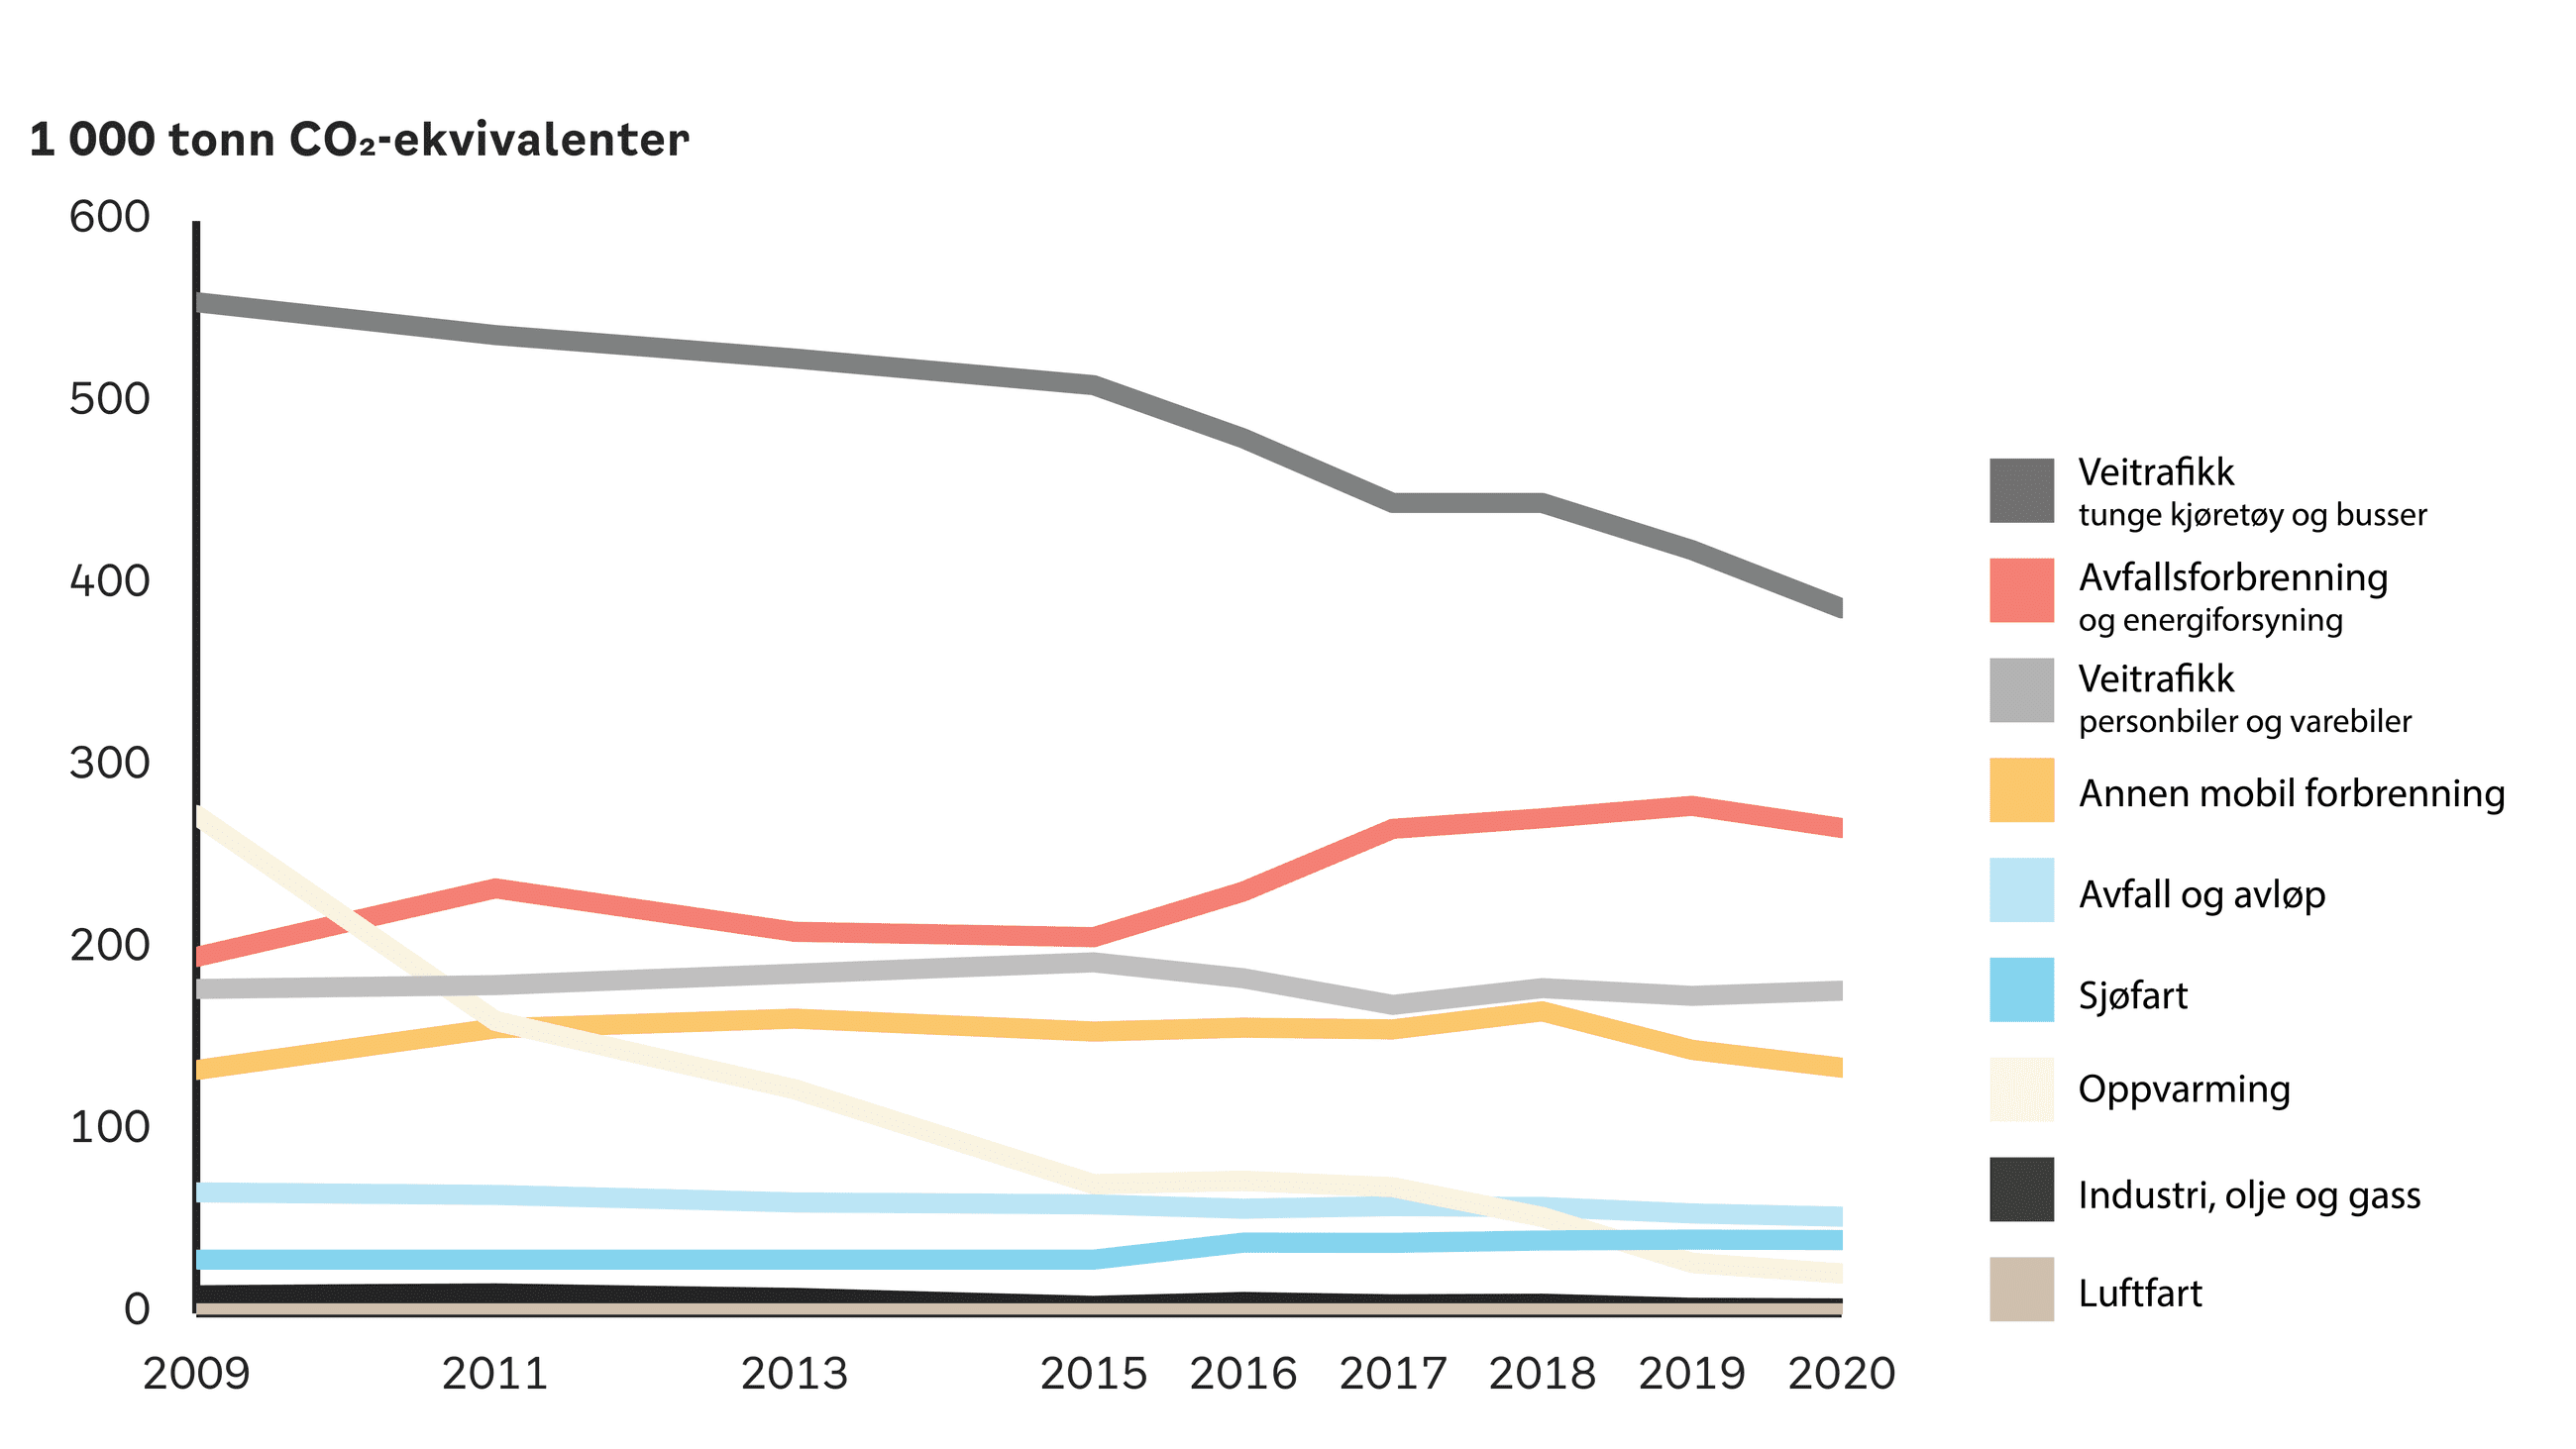 klimagassregnskap, utvikling per sektor siden 2009, figur